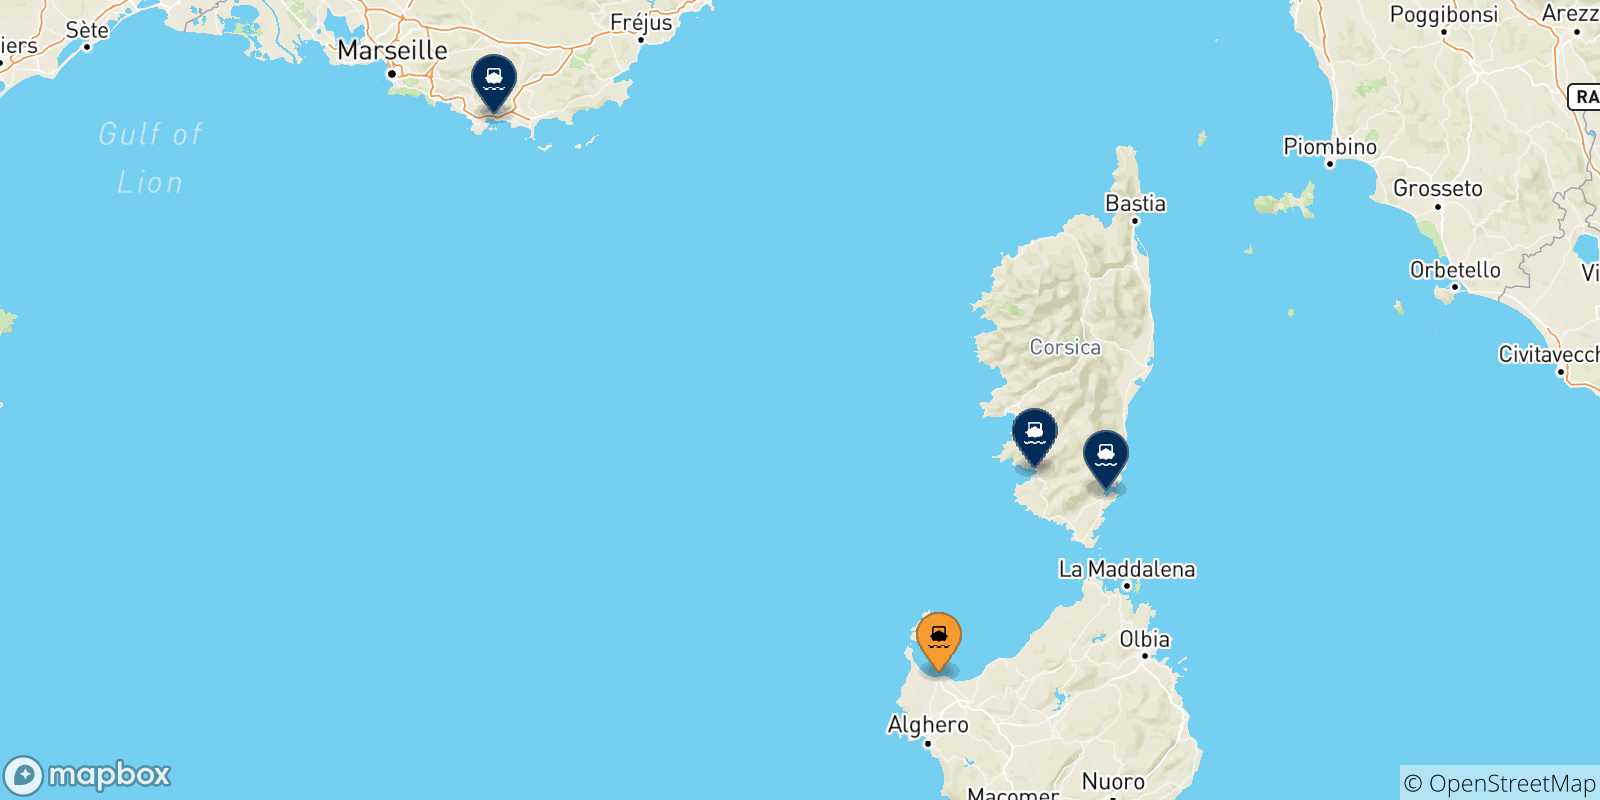 Mappa delle possibili rotte tra Porto Torres e la Francia